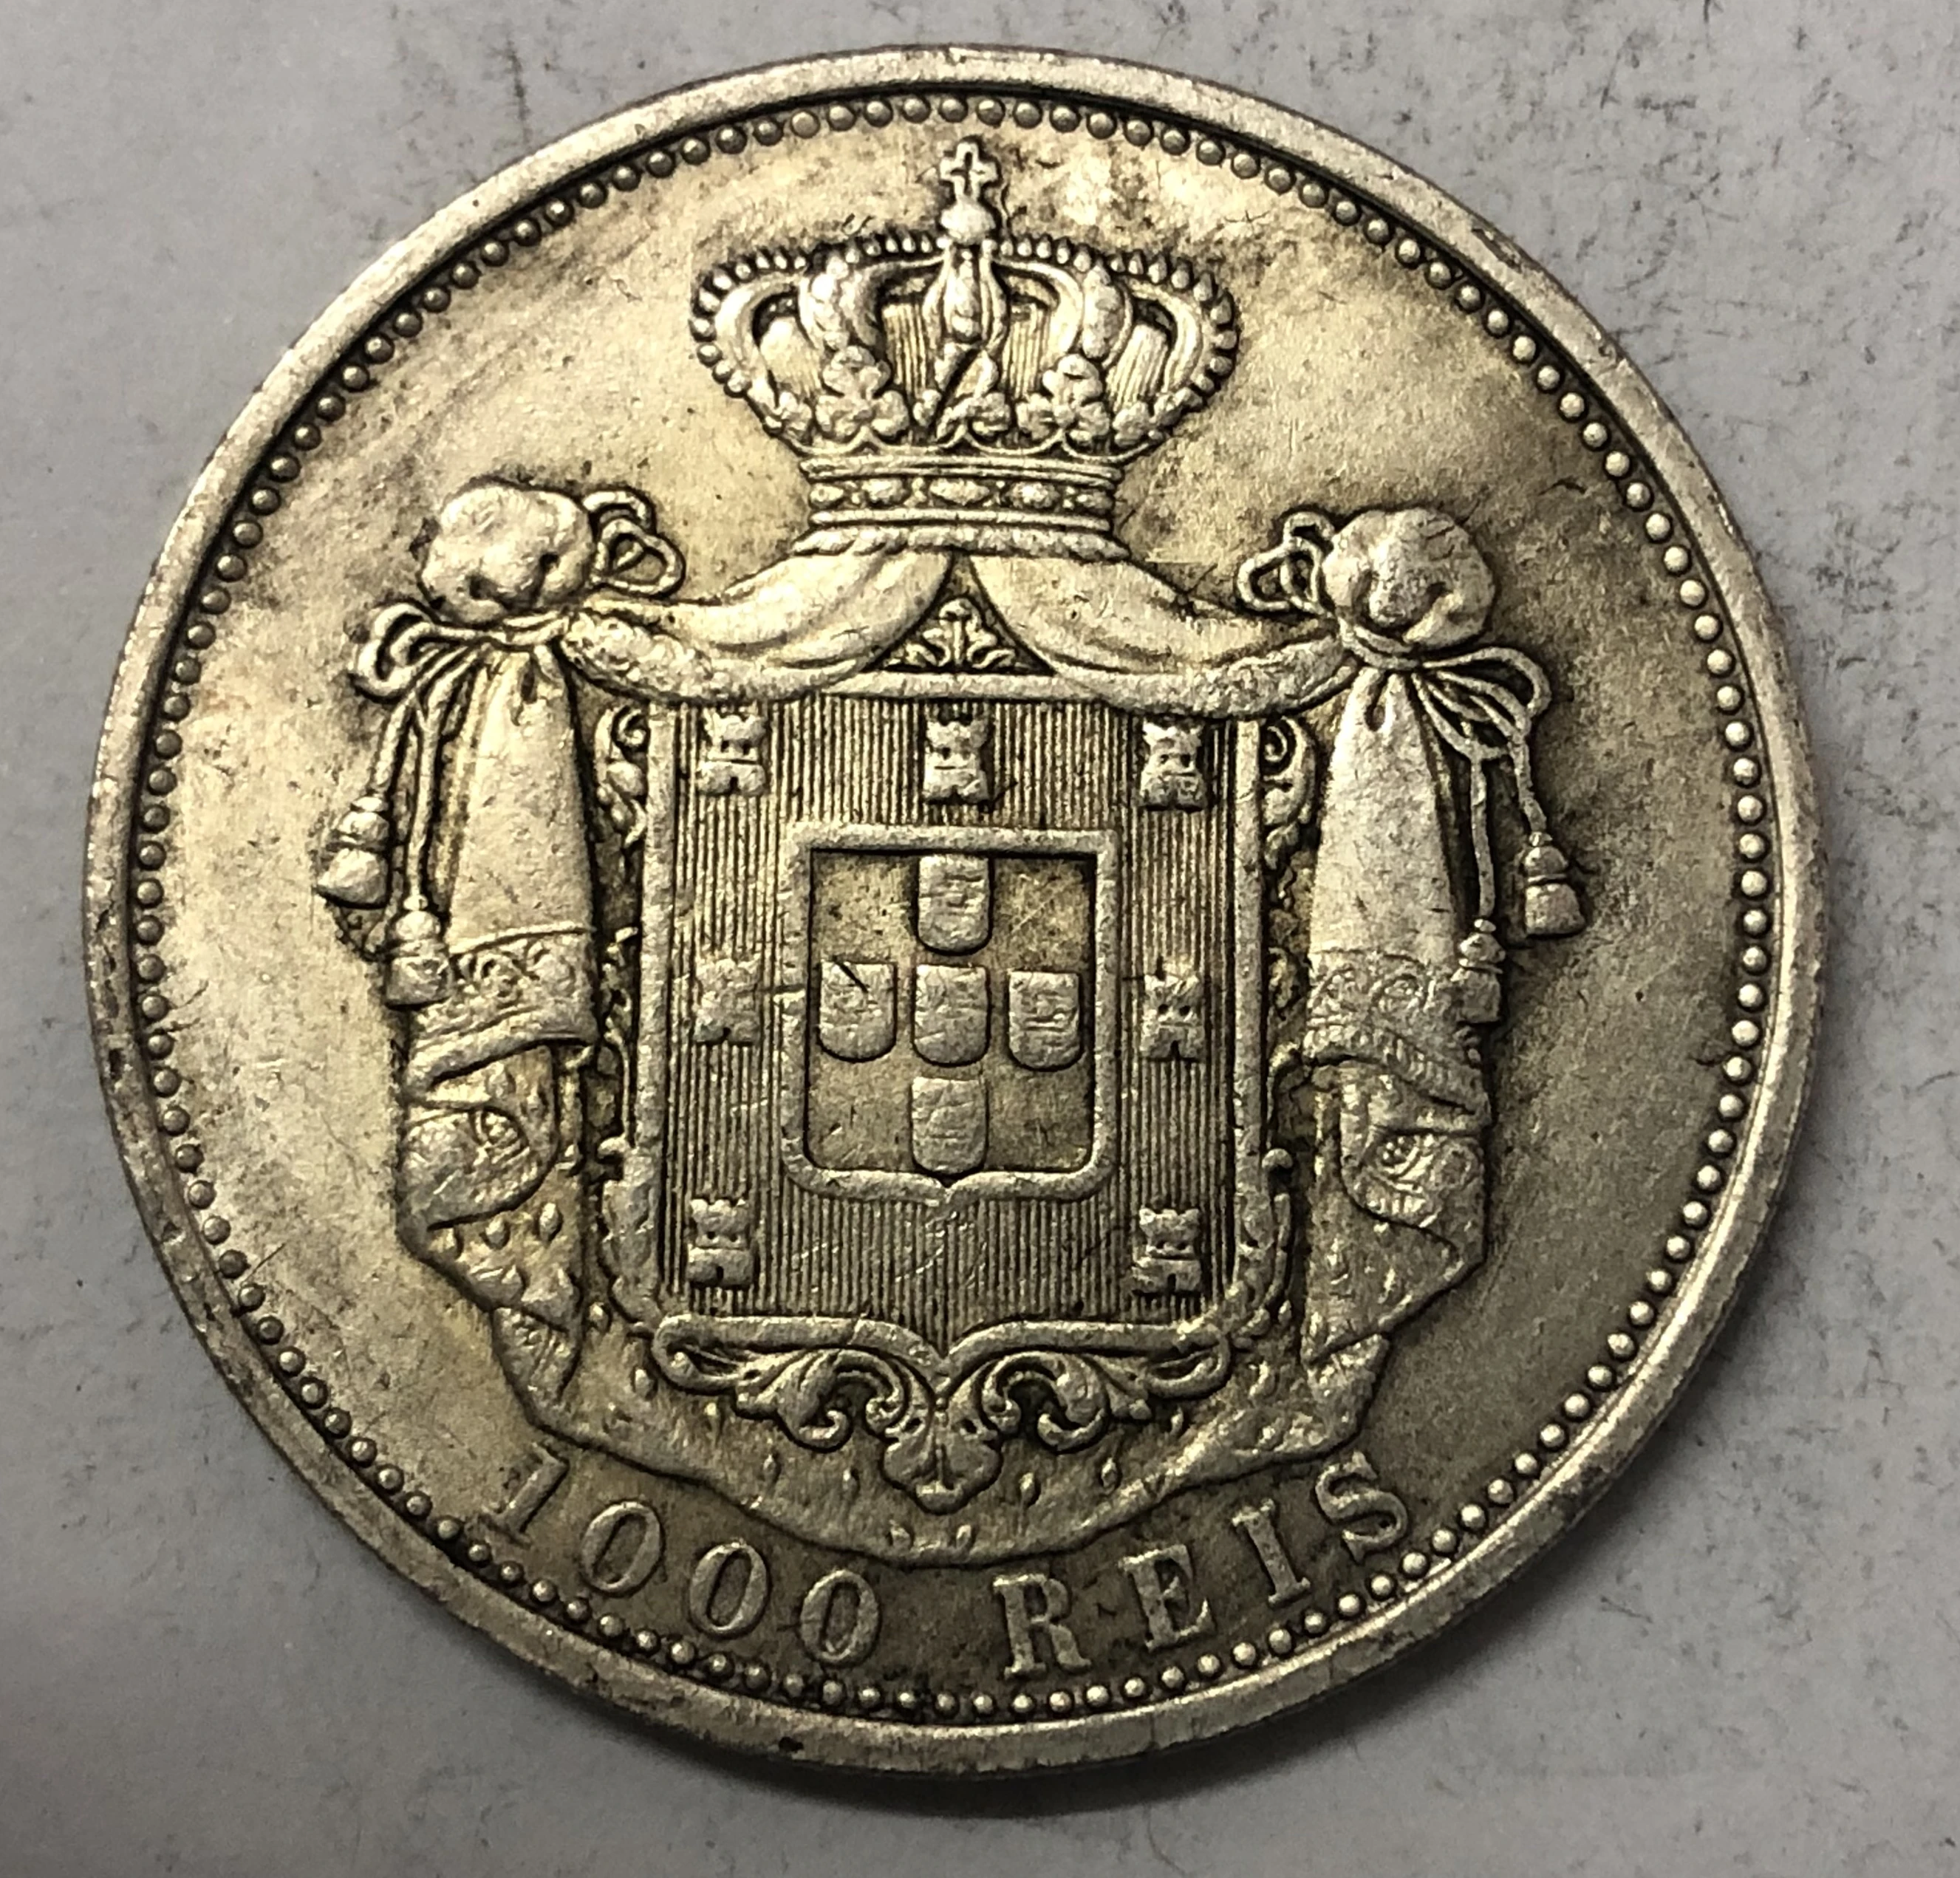 1837 Португалия 1000 REIS-Maria II монета с серебряным покрытием точная копия